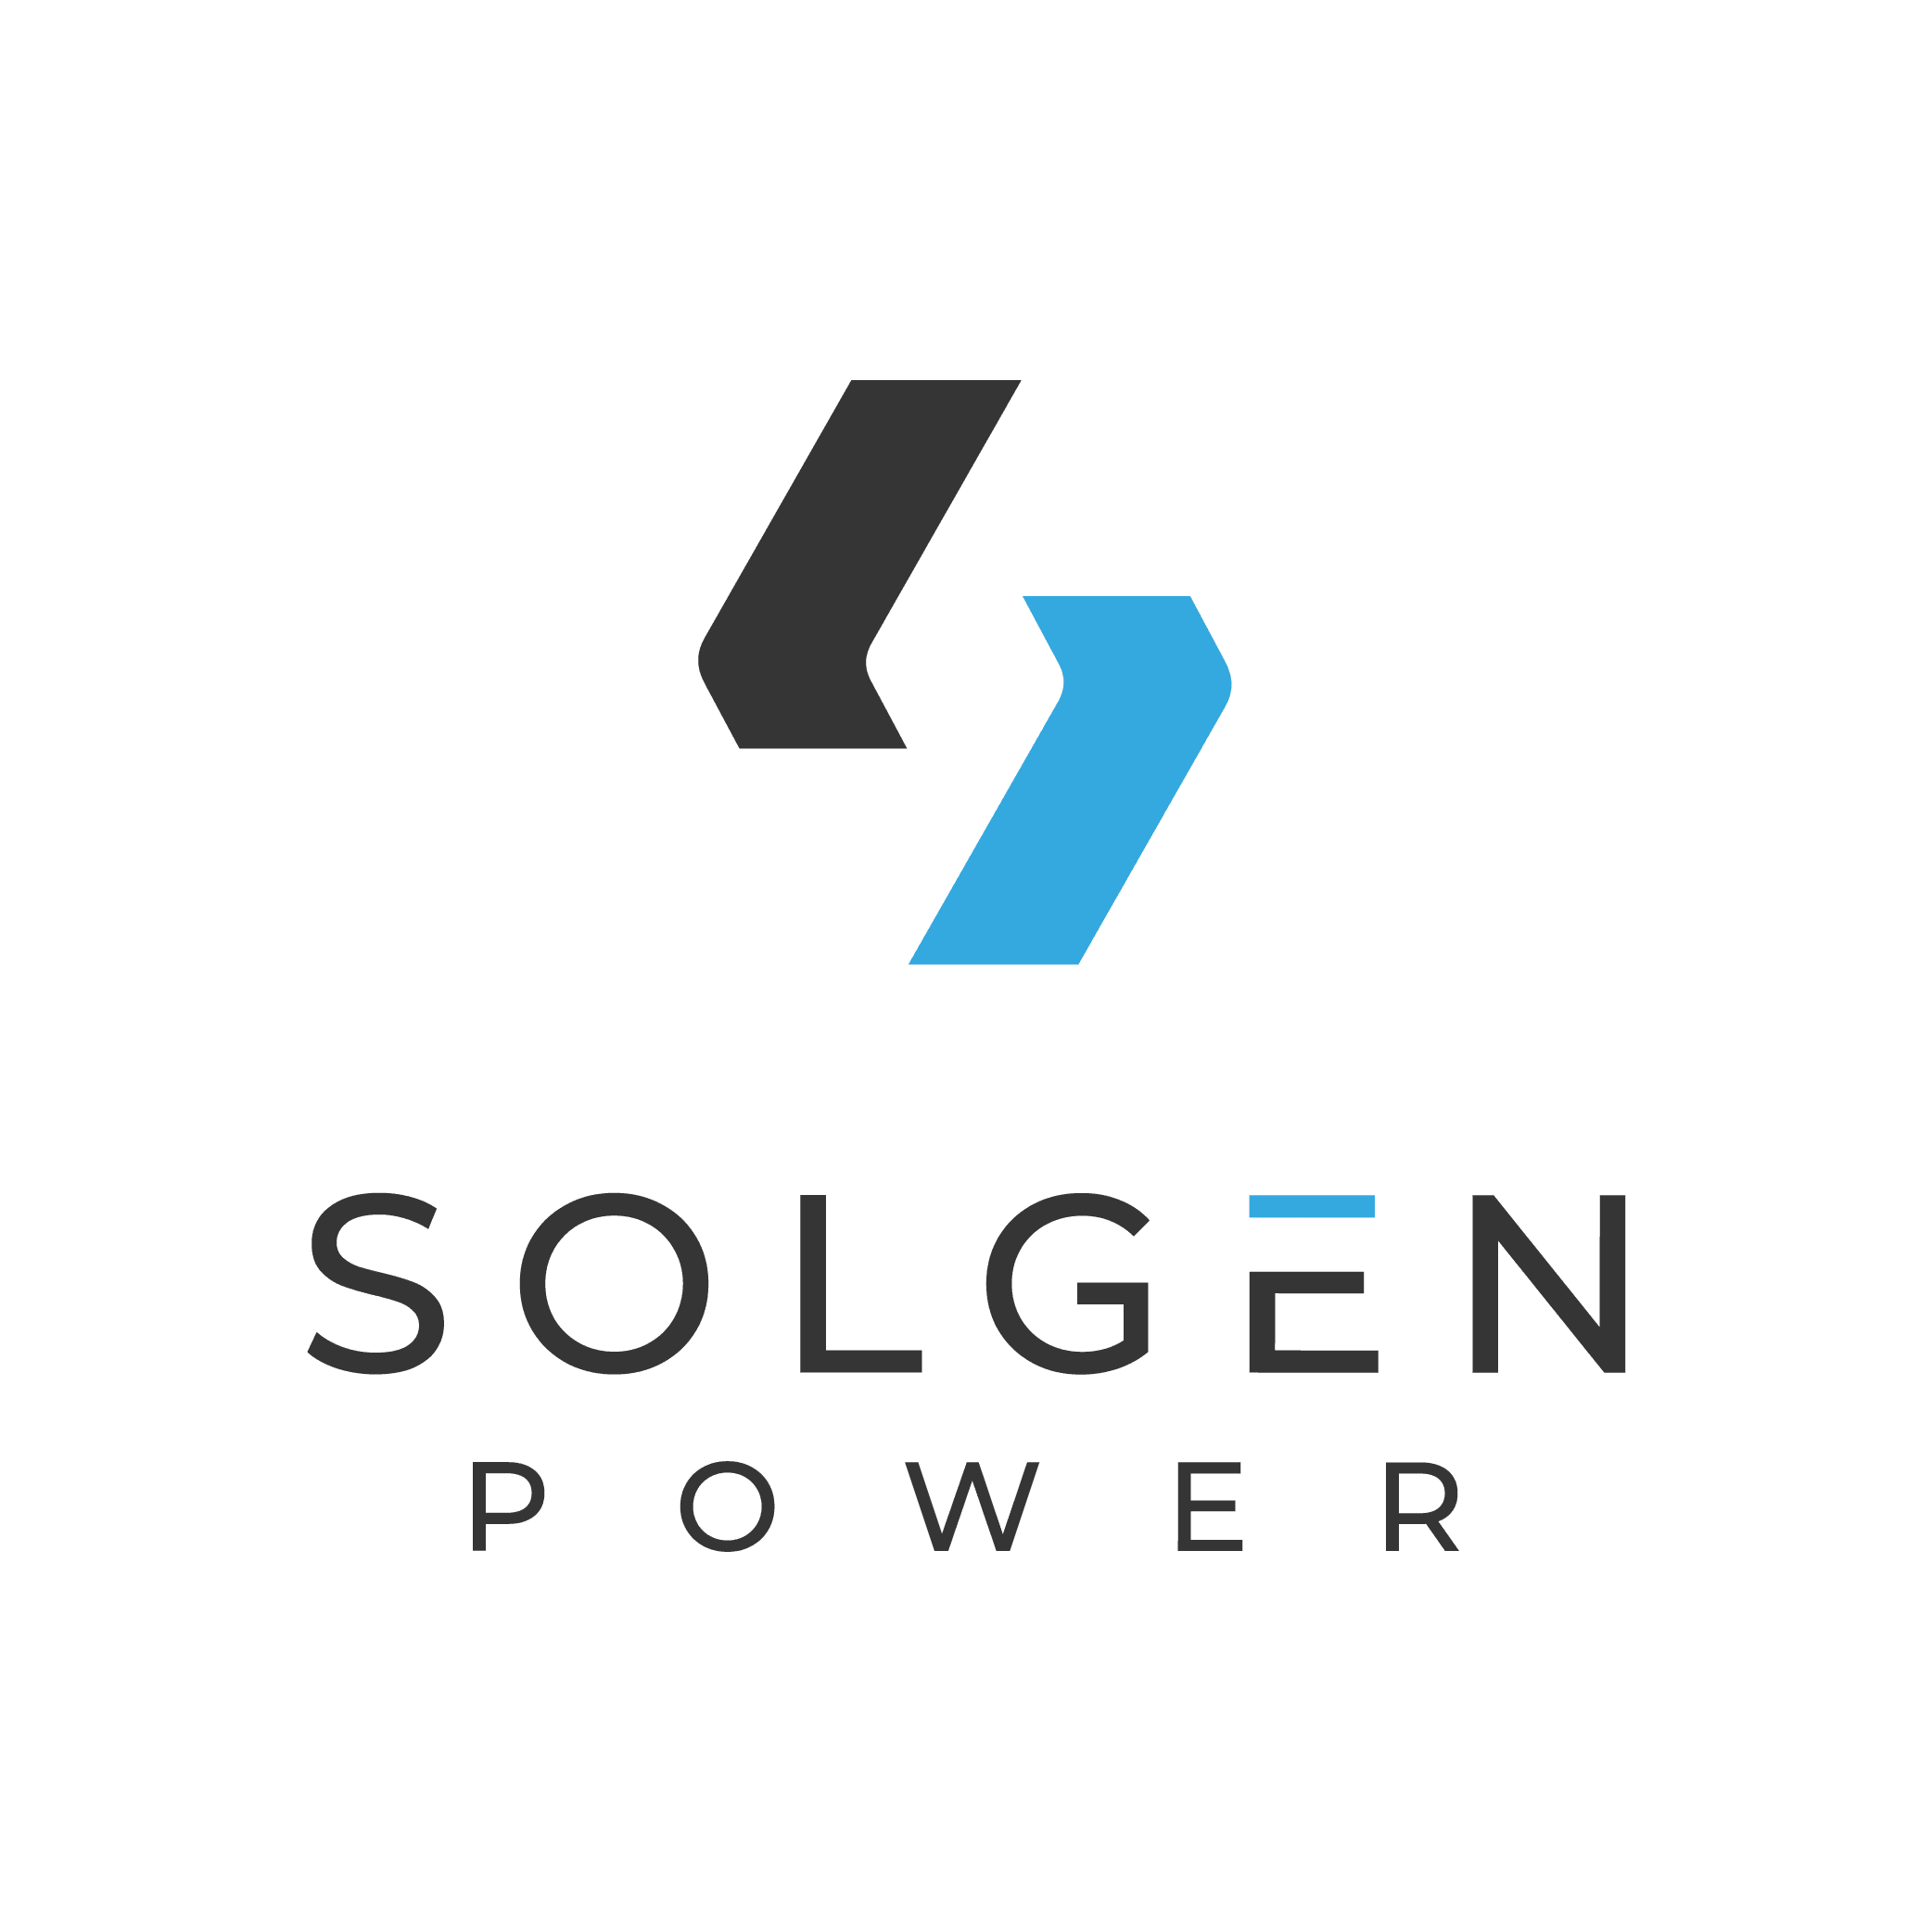 solar panel installers cincinnati Solgen Power